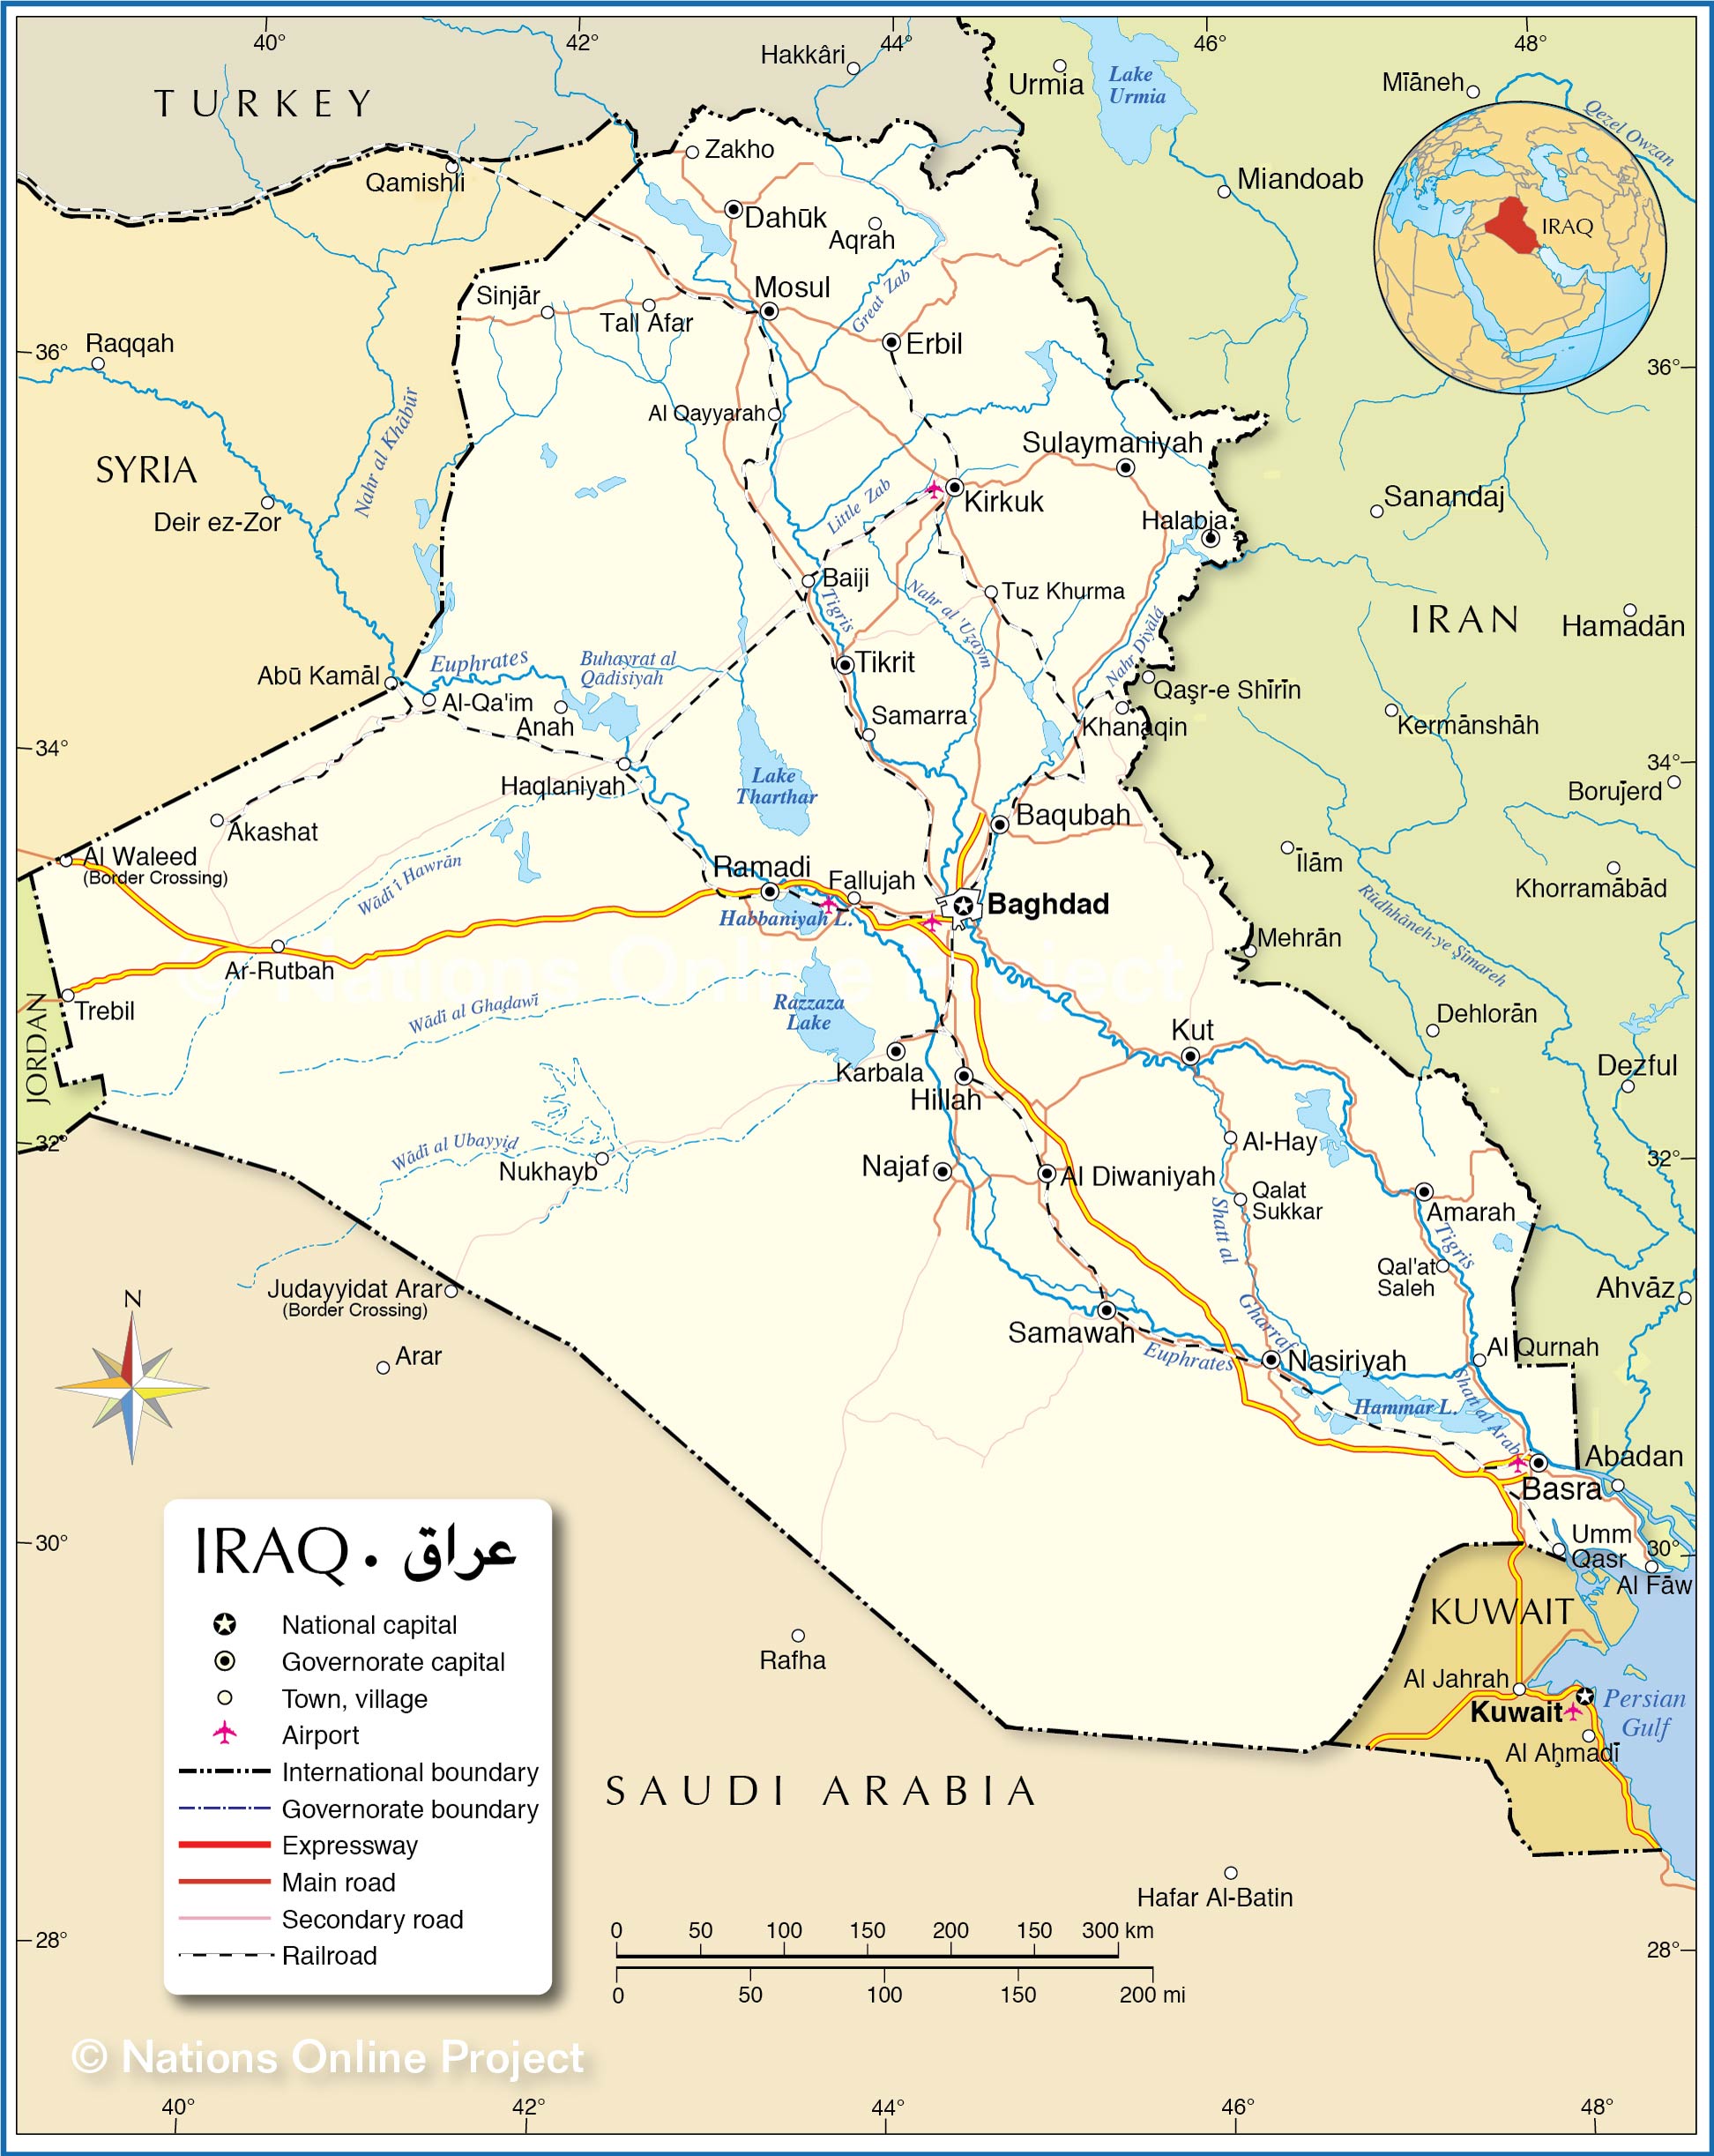 map of iraq kurdistan Political Map Of Iraq Nations Online Project map of iraq kurdistan